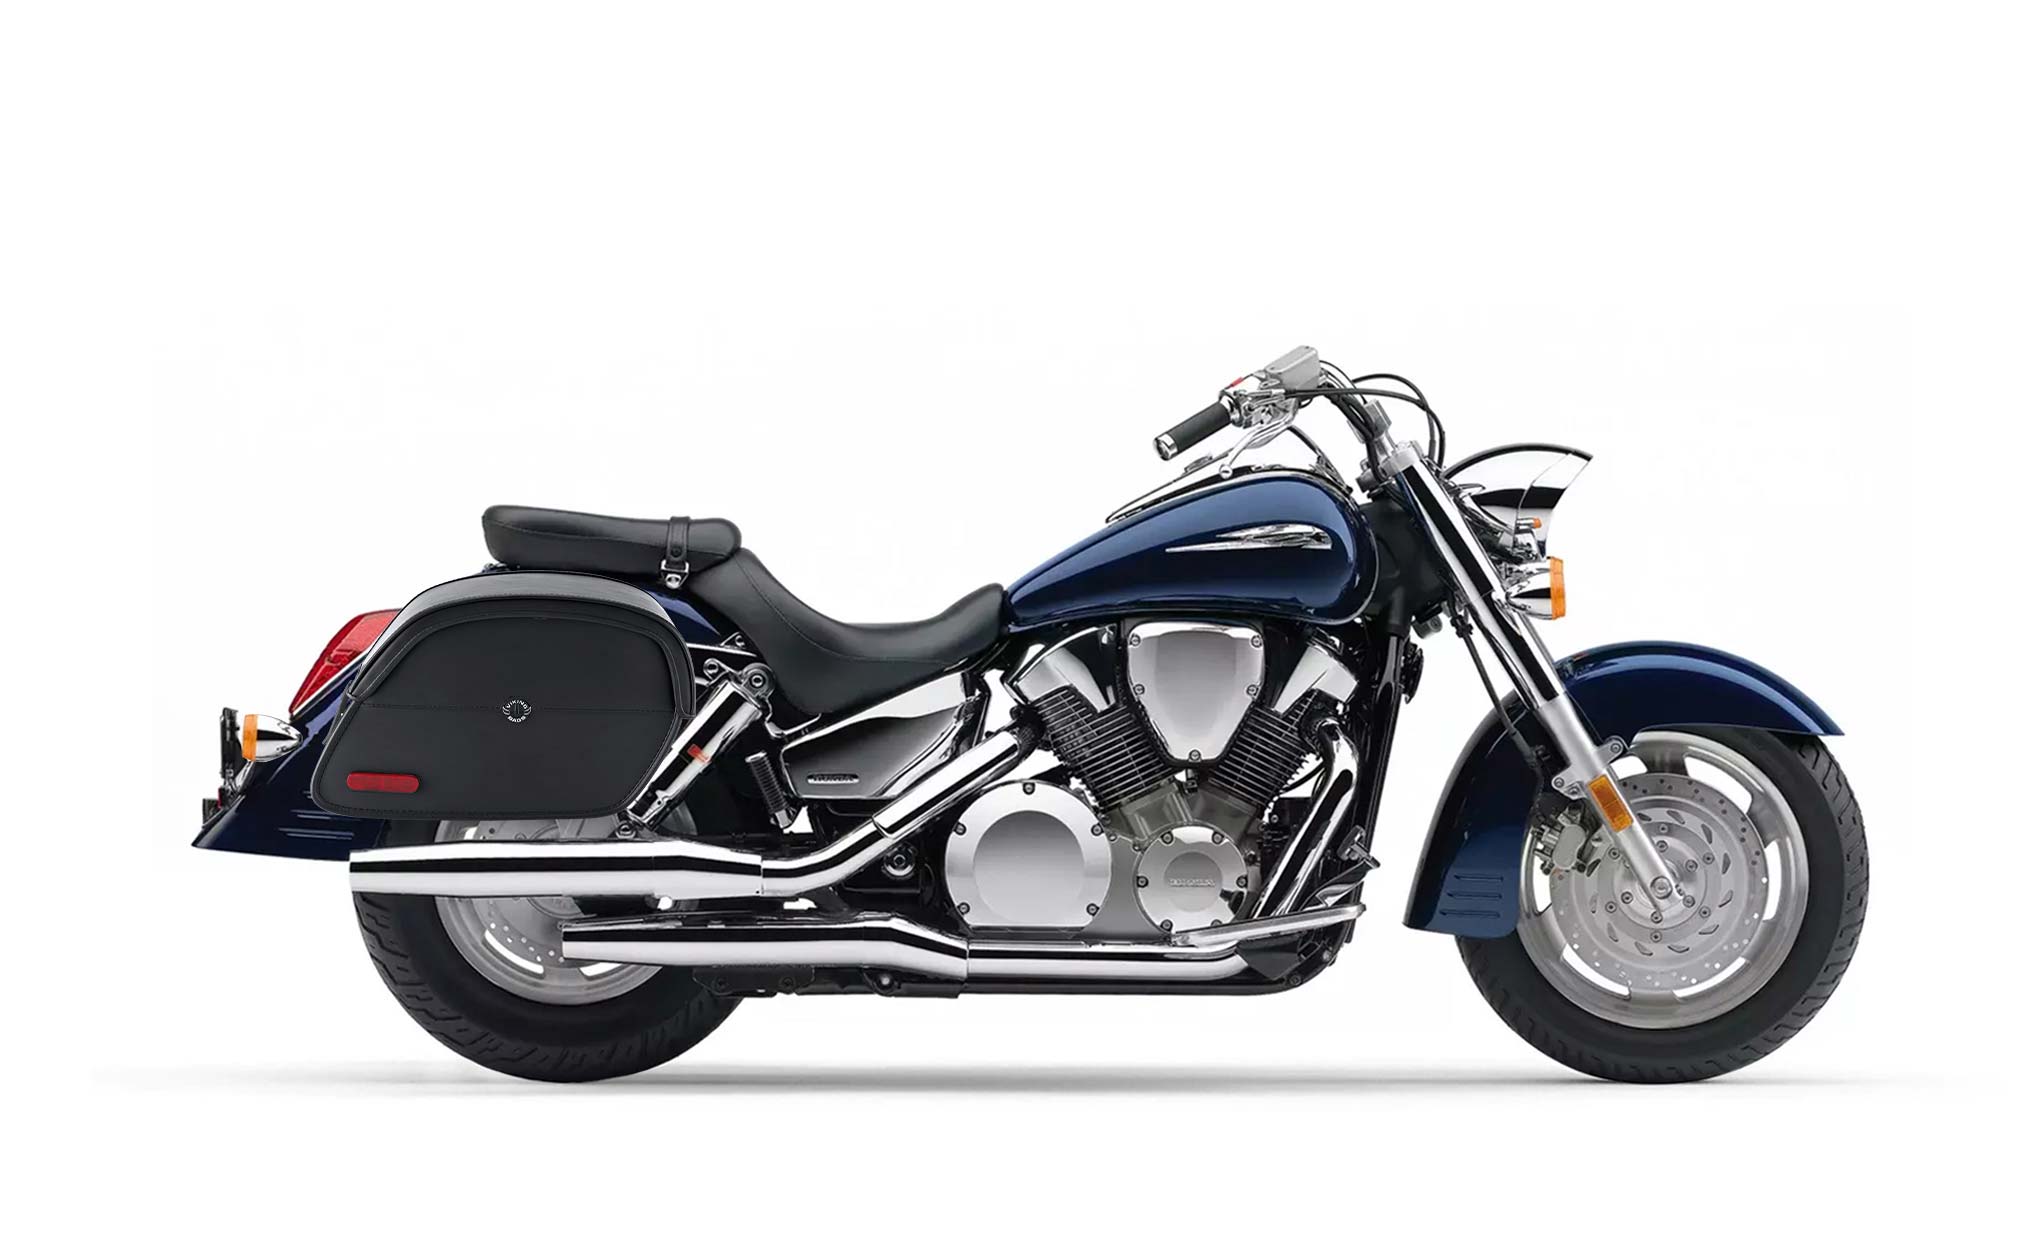 Viking California Large Honda Vtx 1300 R Retro Leather Motorcycle Saddlebags on Bike Photo @expand